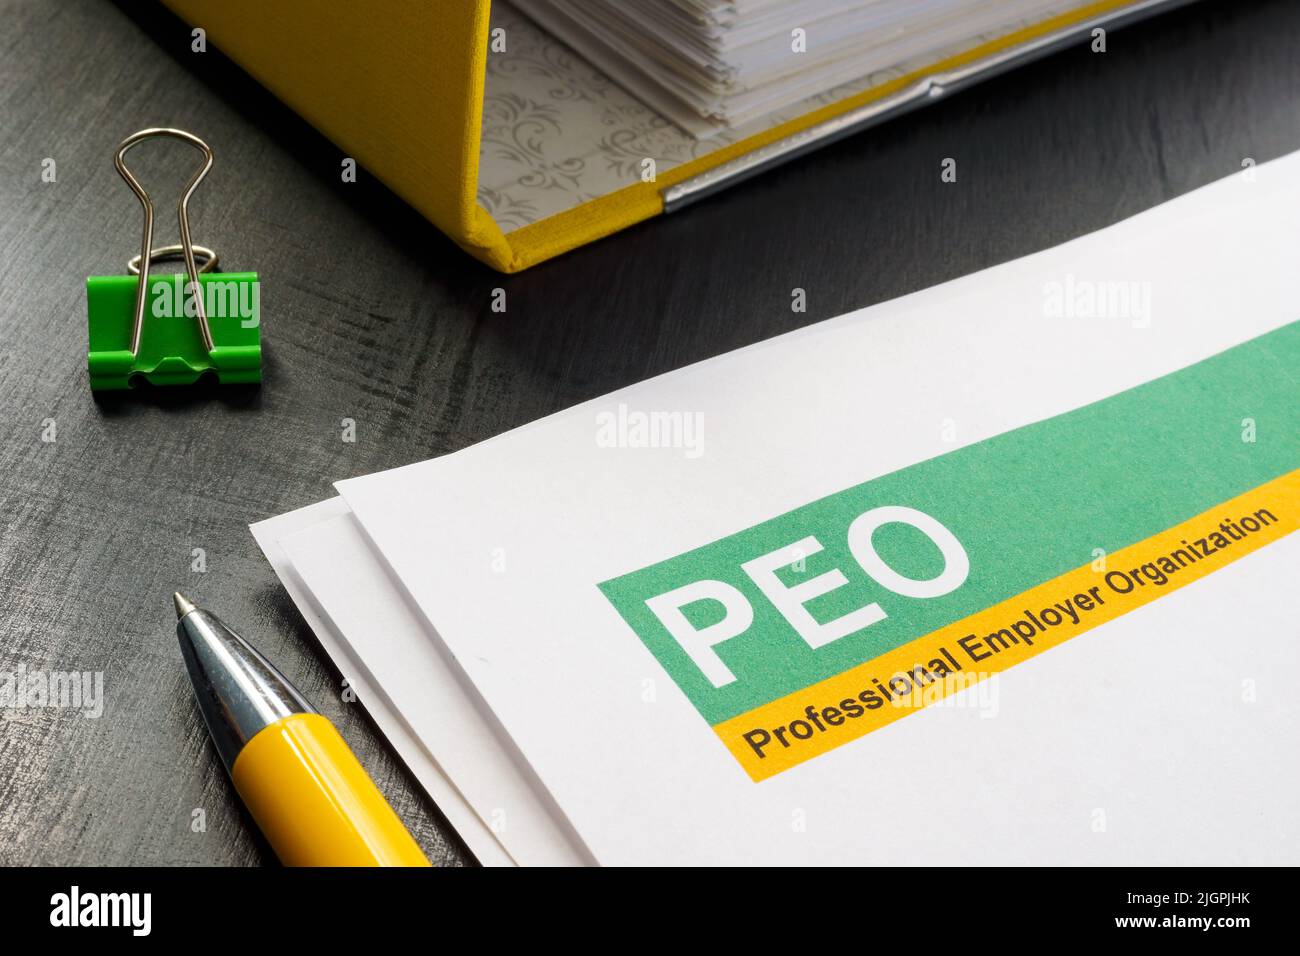 Documenti sull'organizzazione e la cartella dei datori di lavoro professionali PEO. Foto Stock